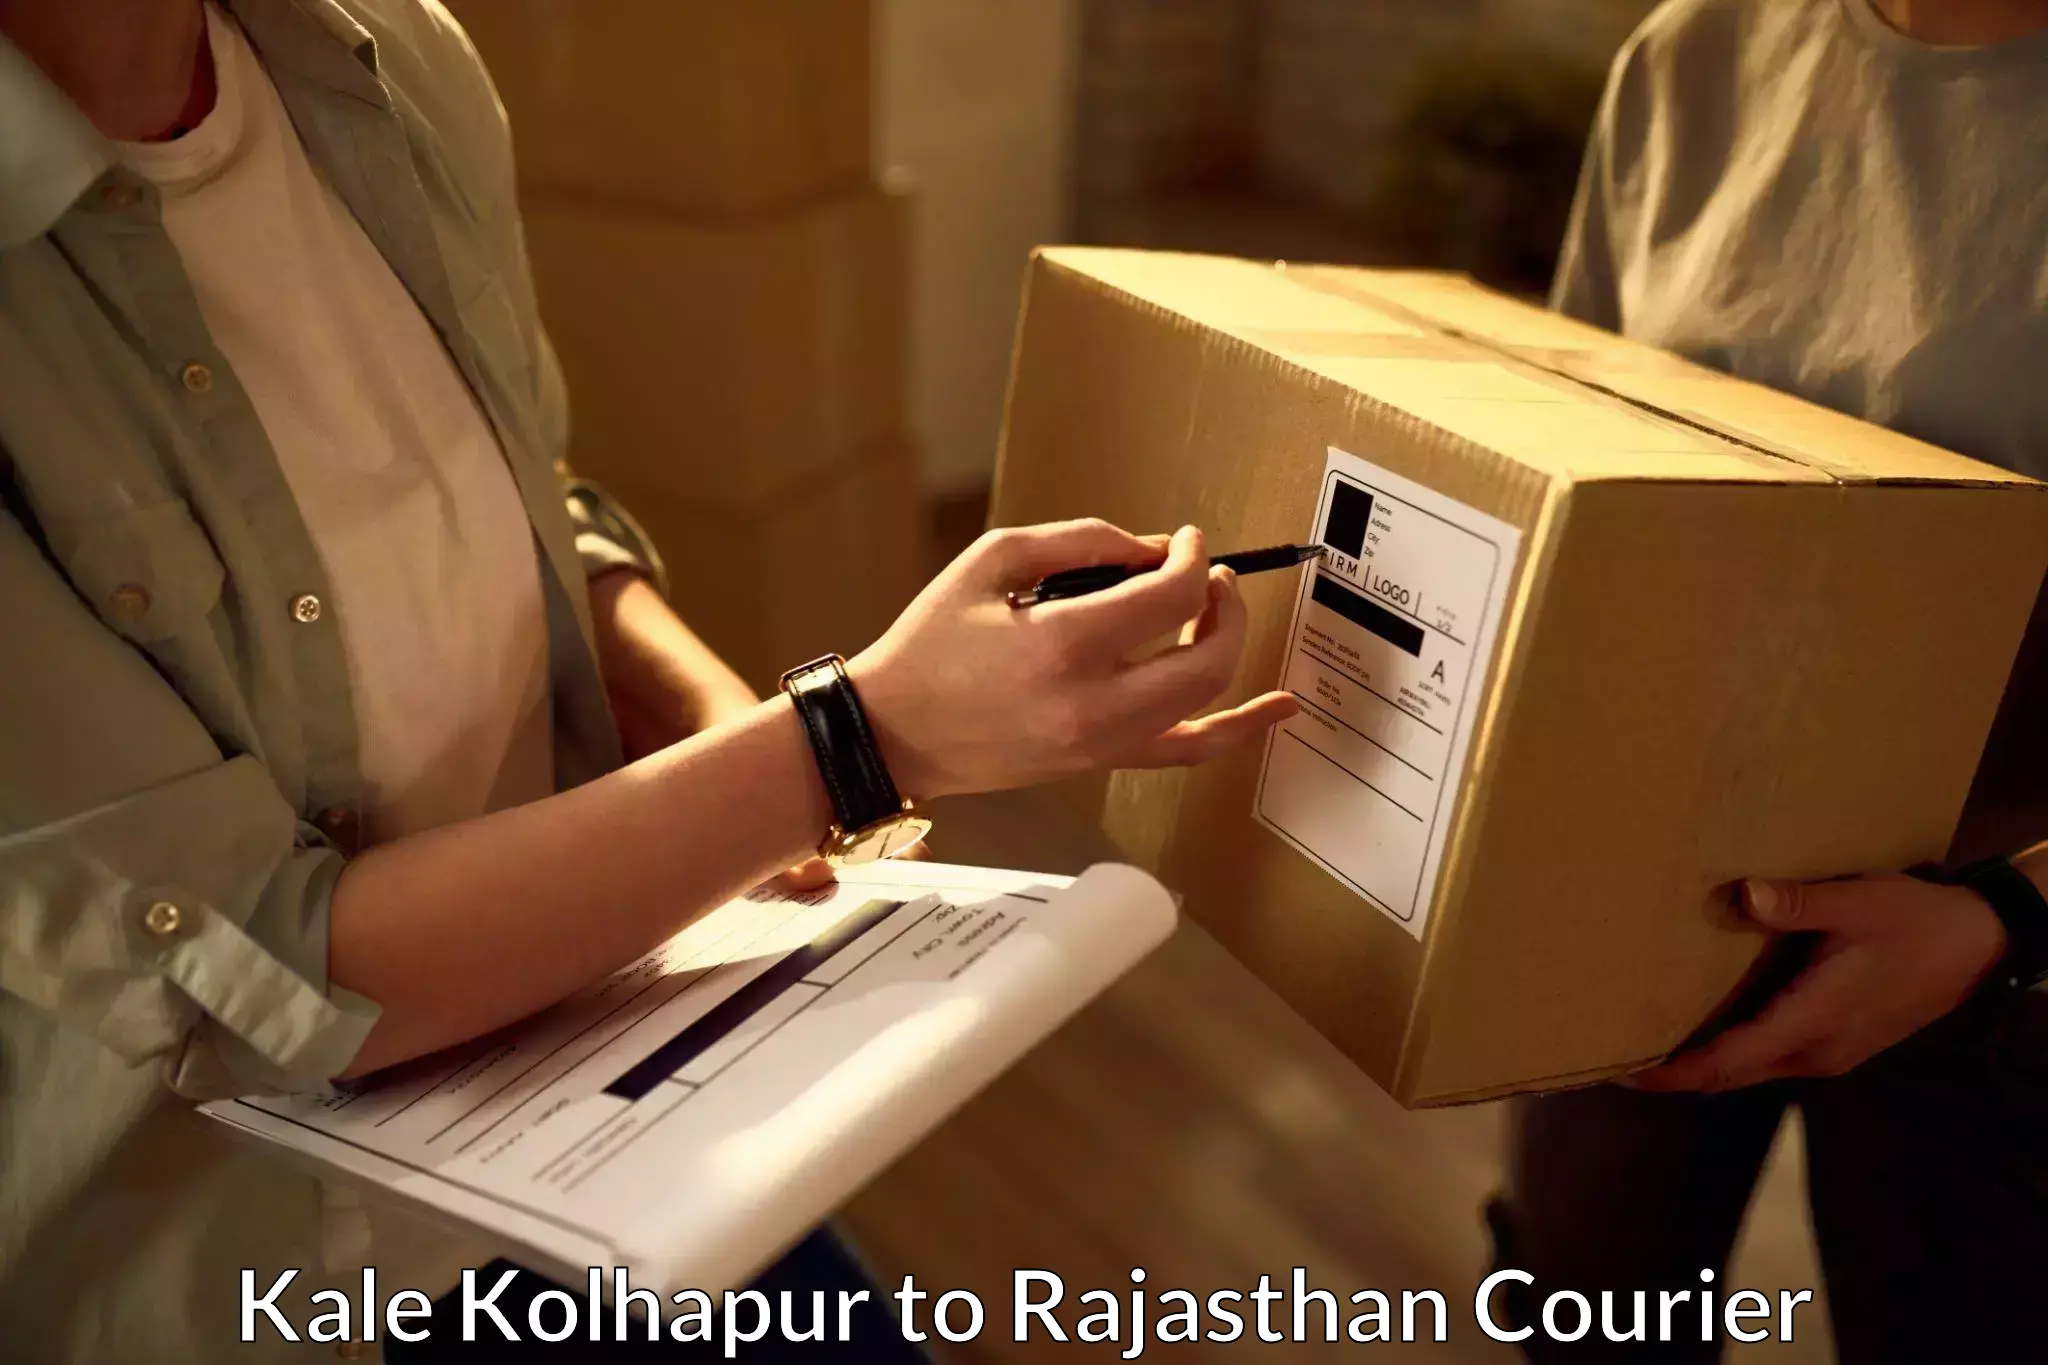 Express courier facilities Kale Kolhapur to Bikaner